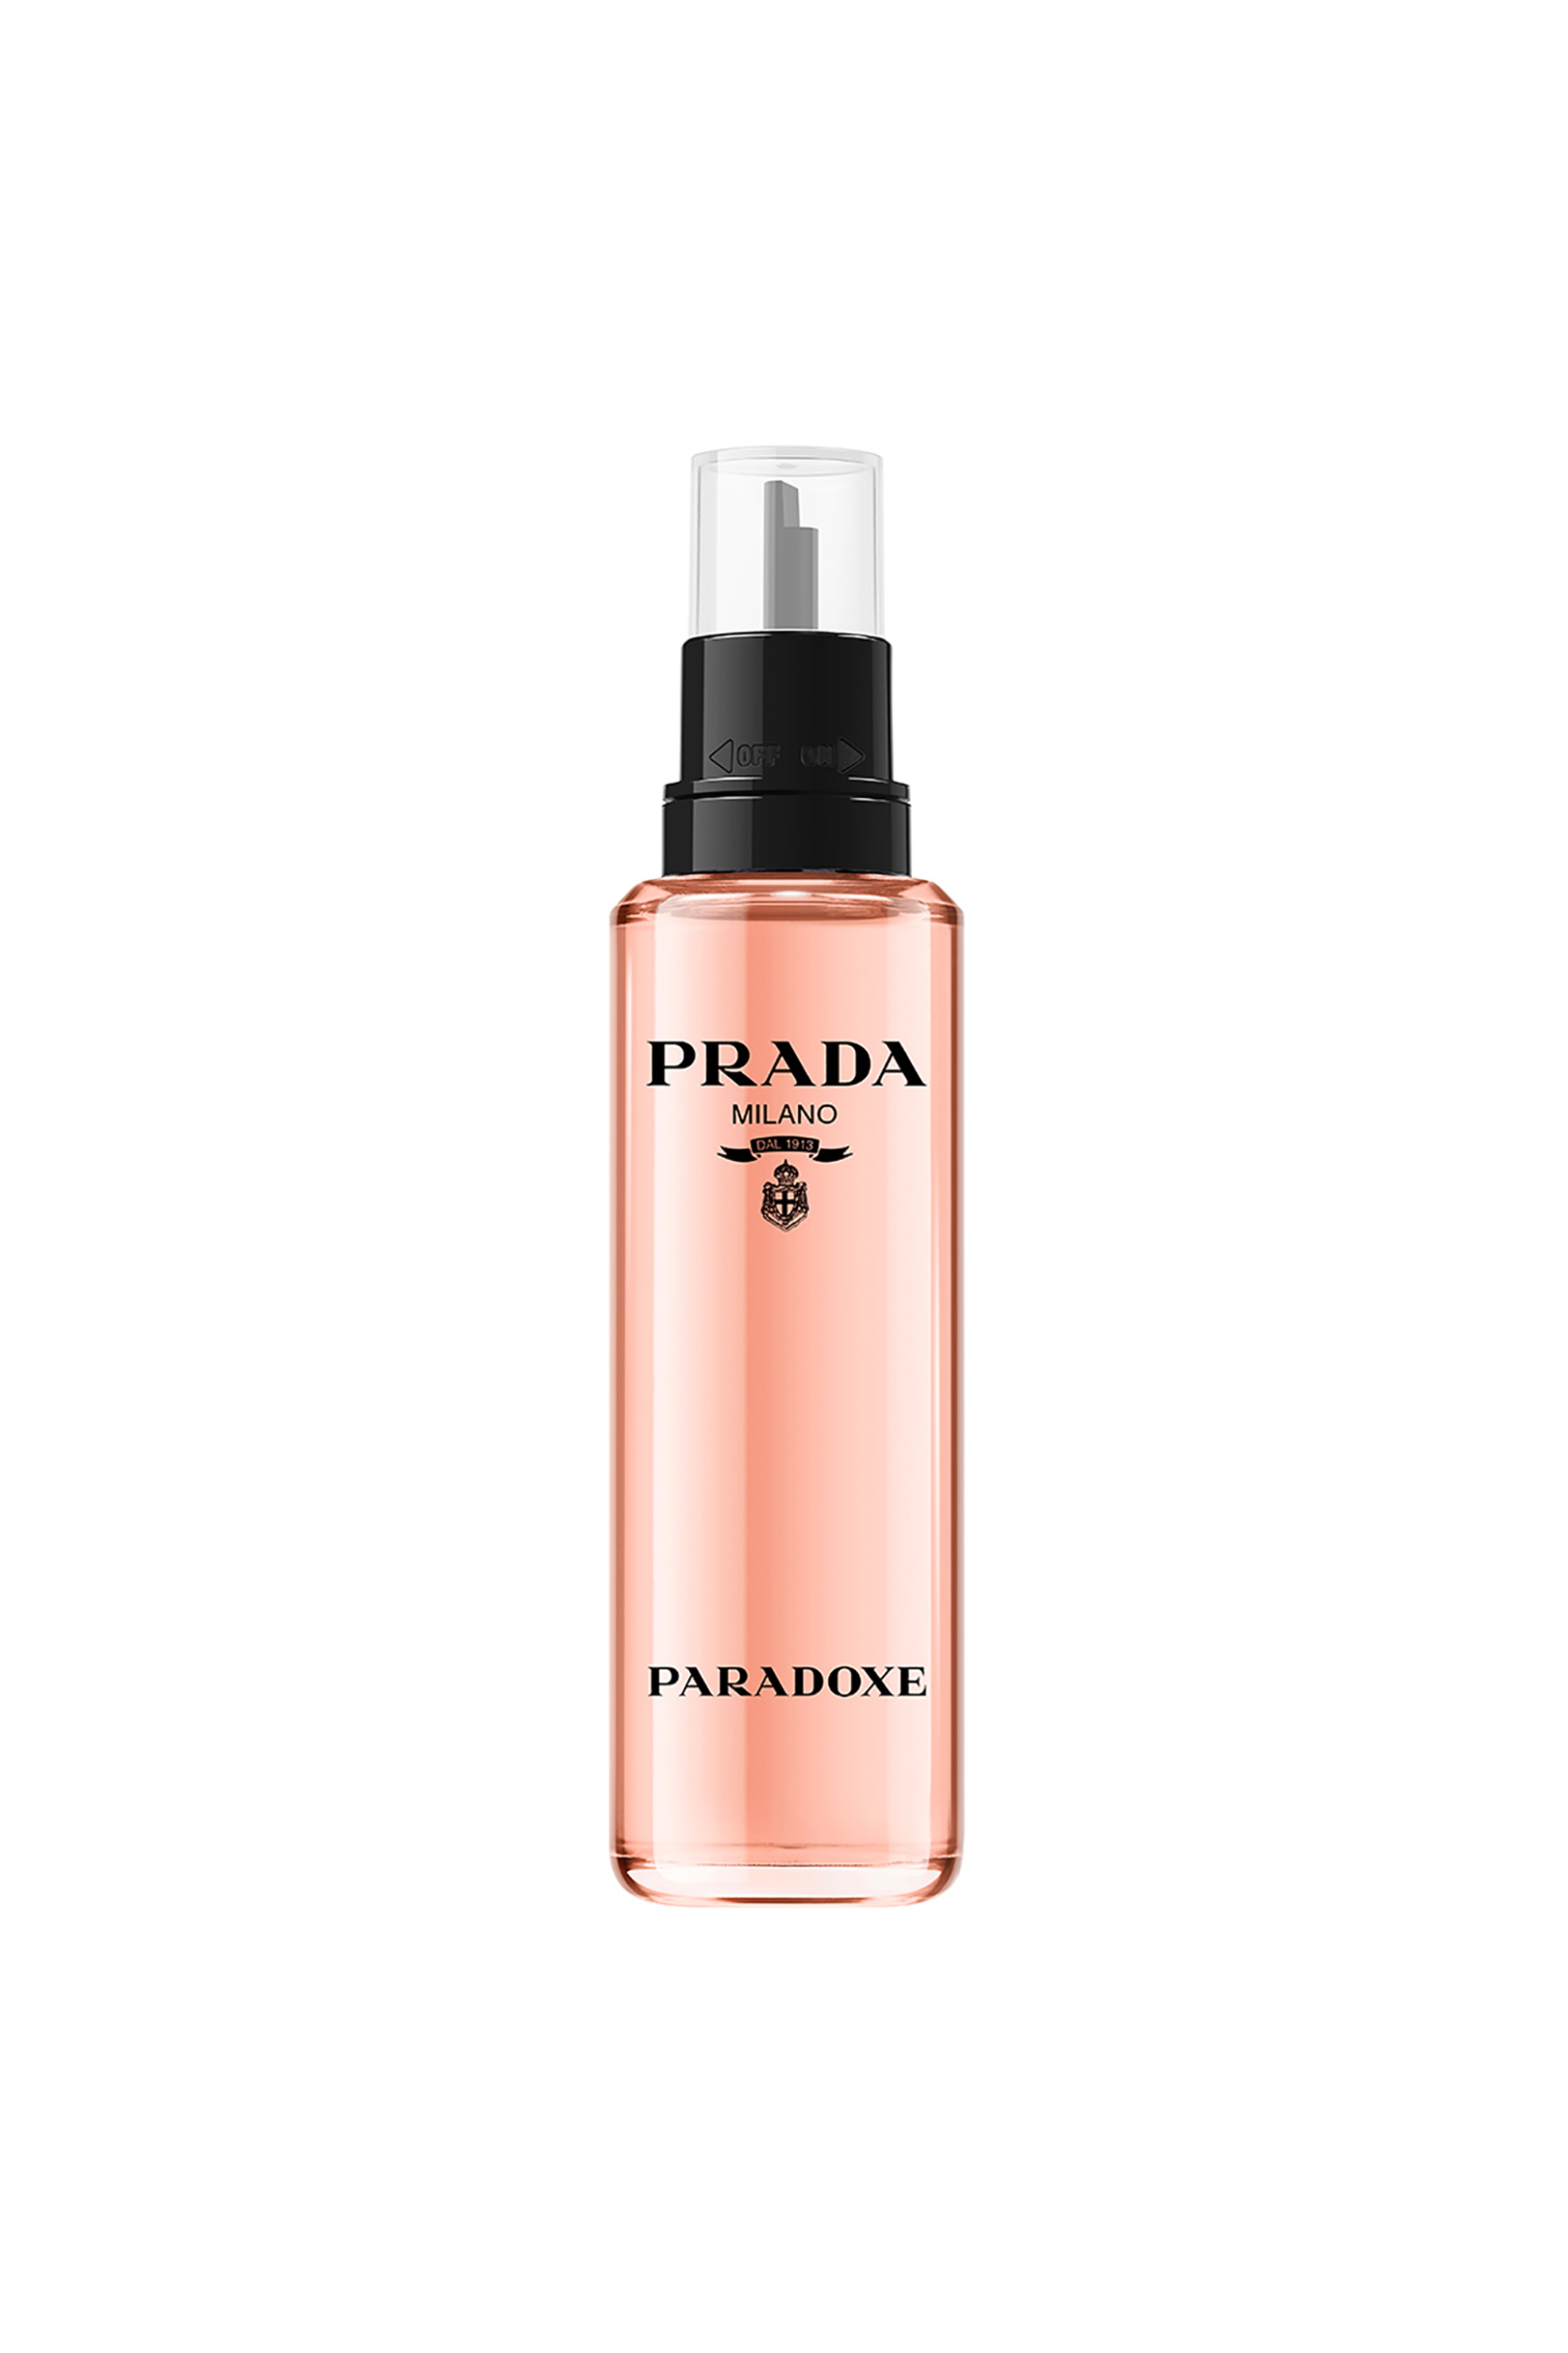 Προϊόντα Ομορφιάς > ΑΡΩΜΑΤΑ > Γυναικεία Αρώματα > Eau de Parfum - Parfum Prada Paradoxe Eau De Parfum - 3614273760201